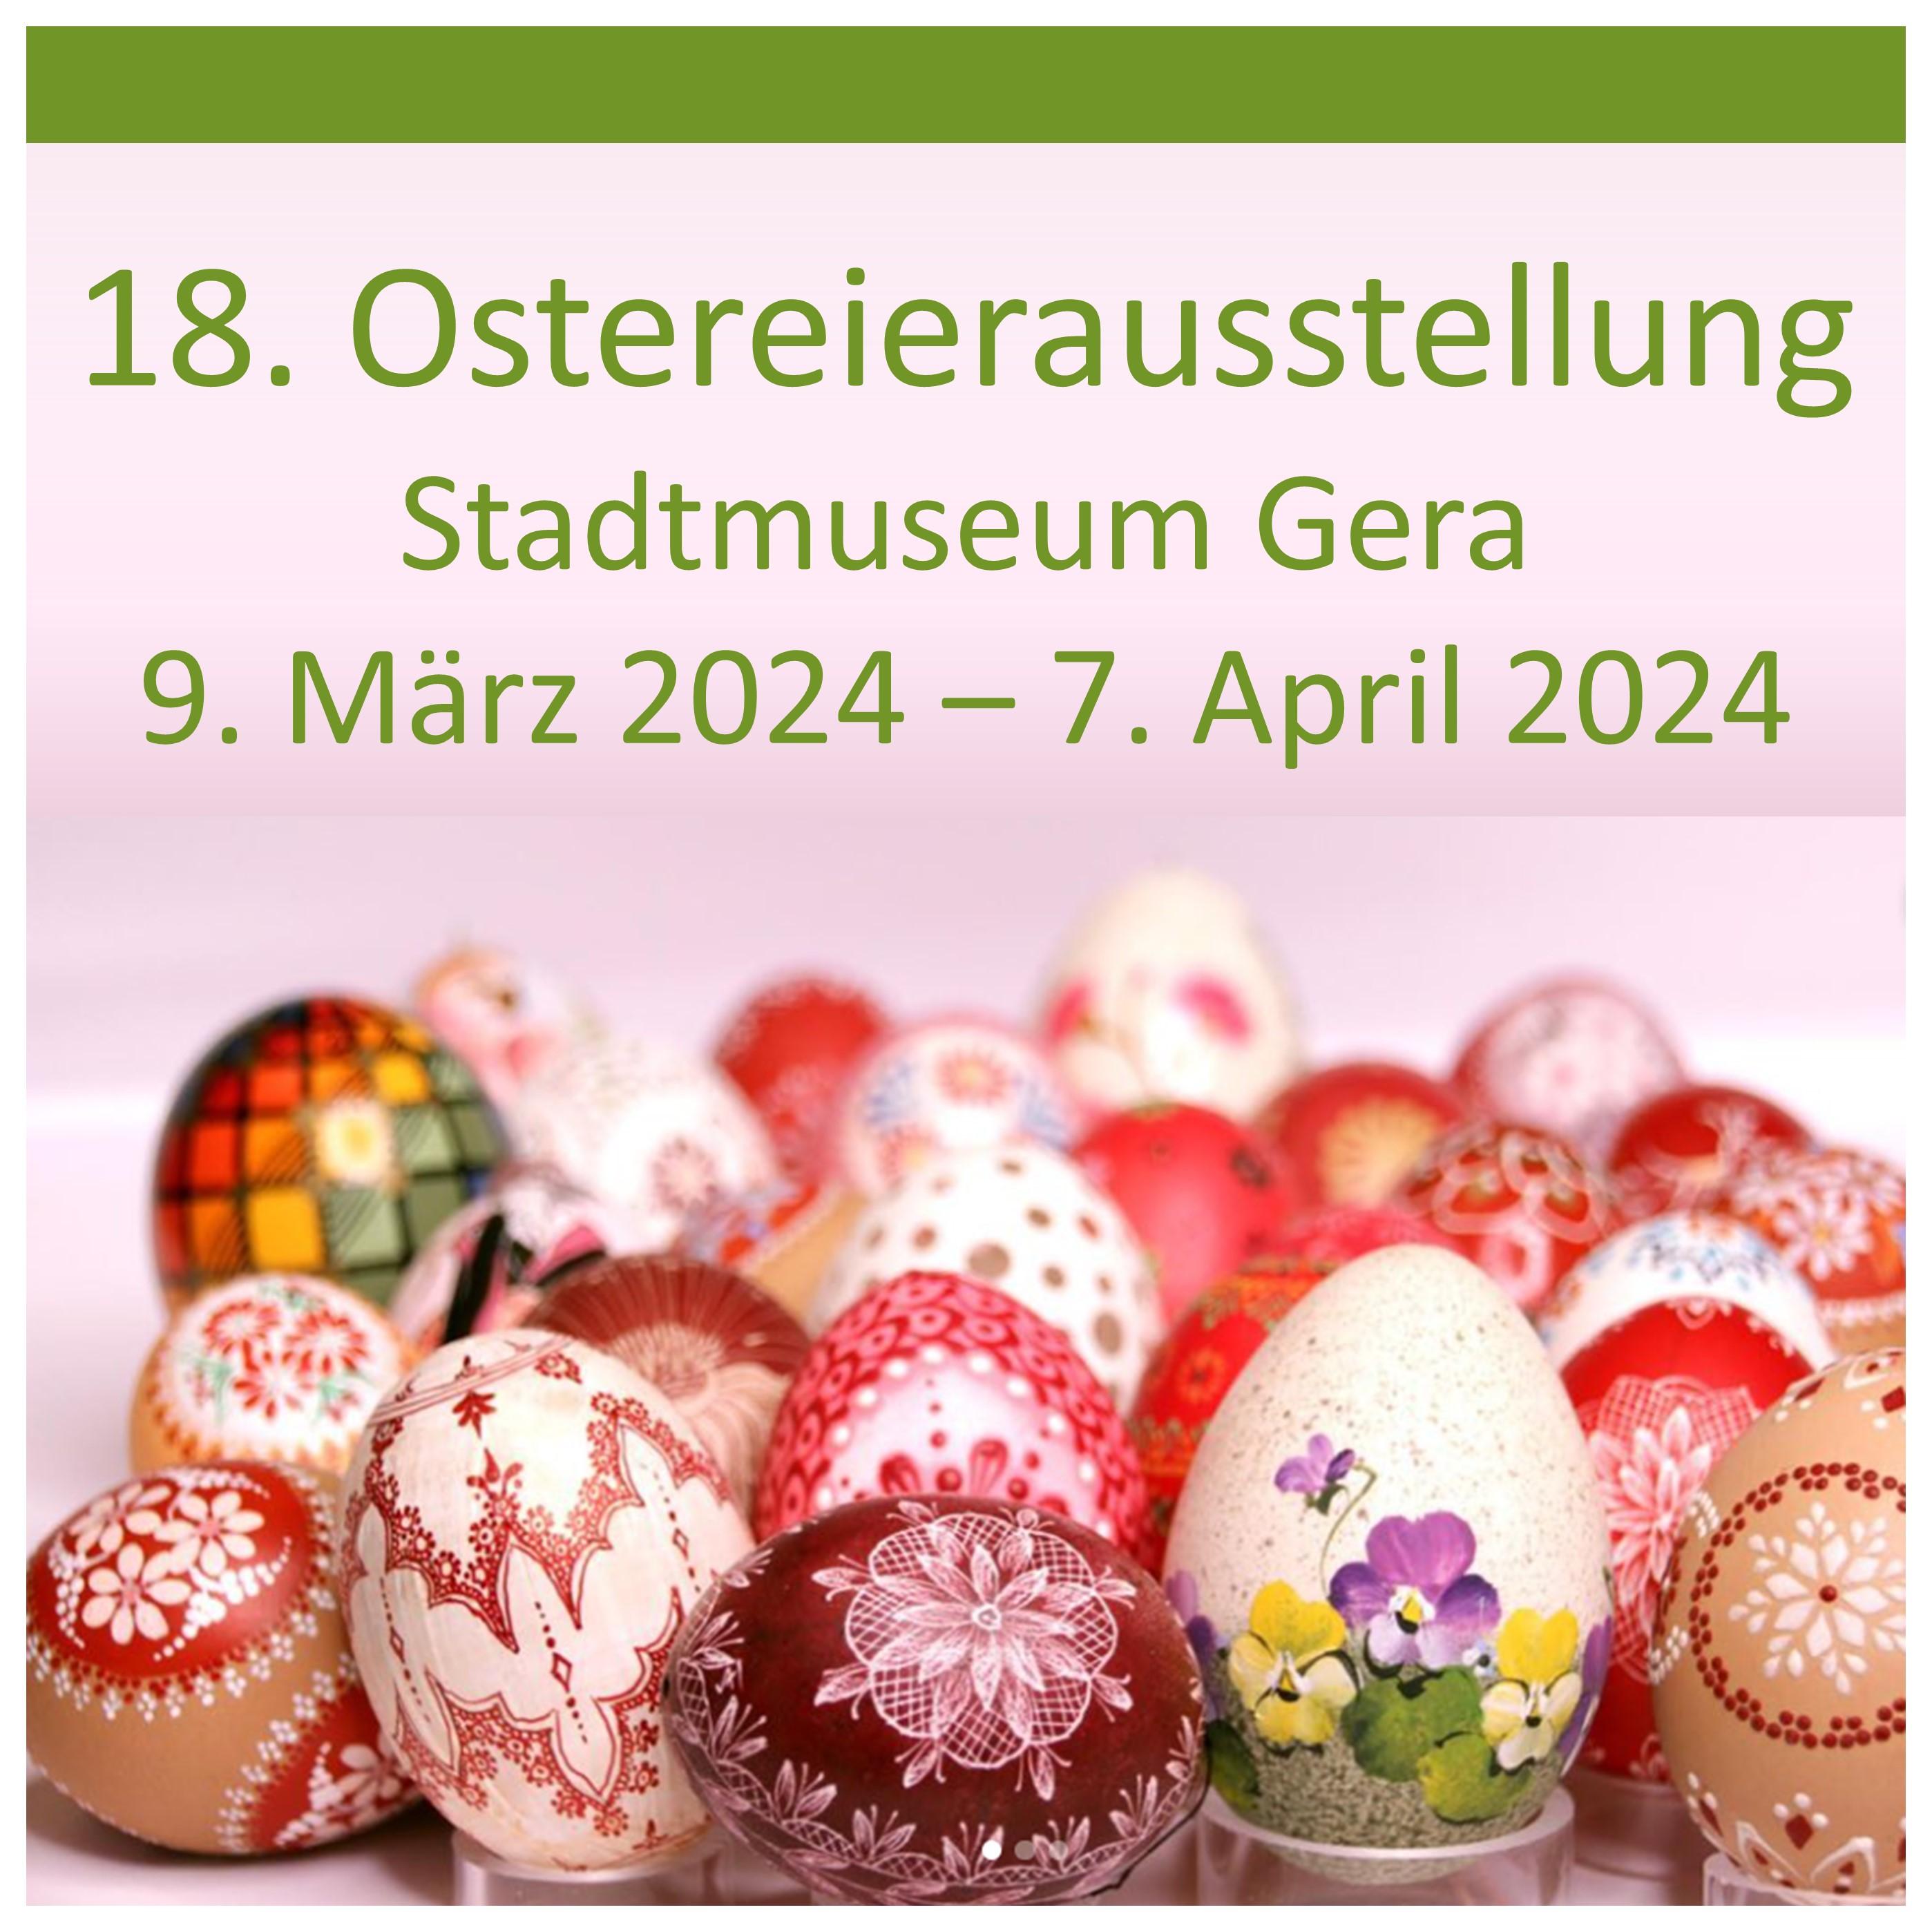 18. Ostereierausstellung im Stadtmuseum Gera vom 9. März bis 7. April 2024 versehen mit Ostereiern die mit verschiedenen Techniken bemalt und dekoriert wurden